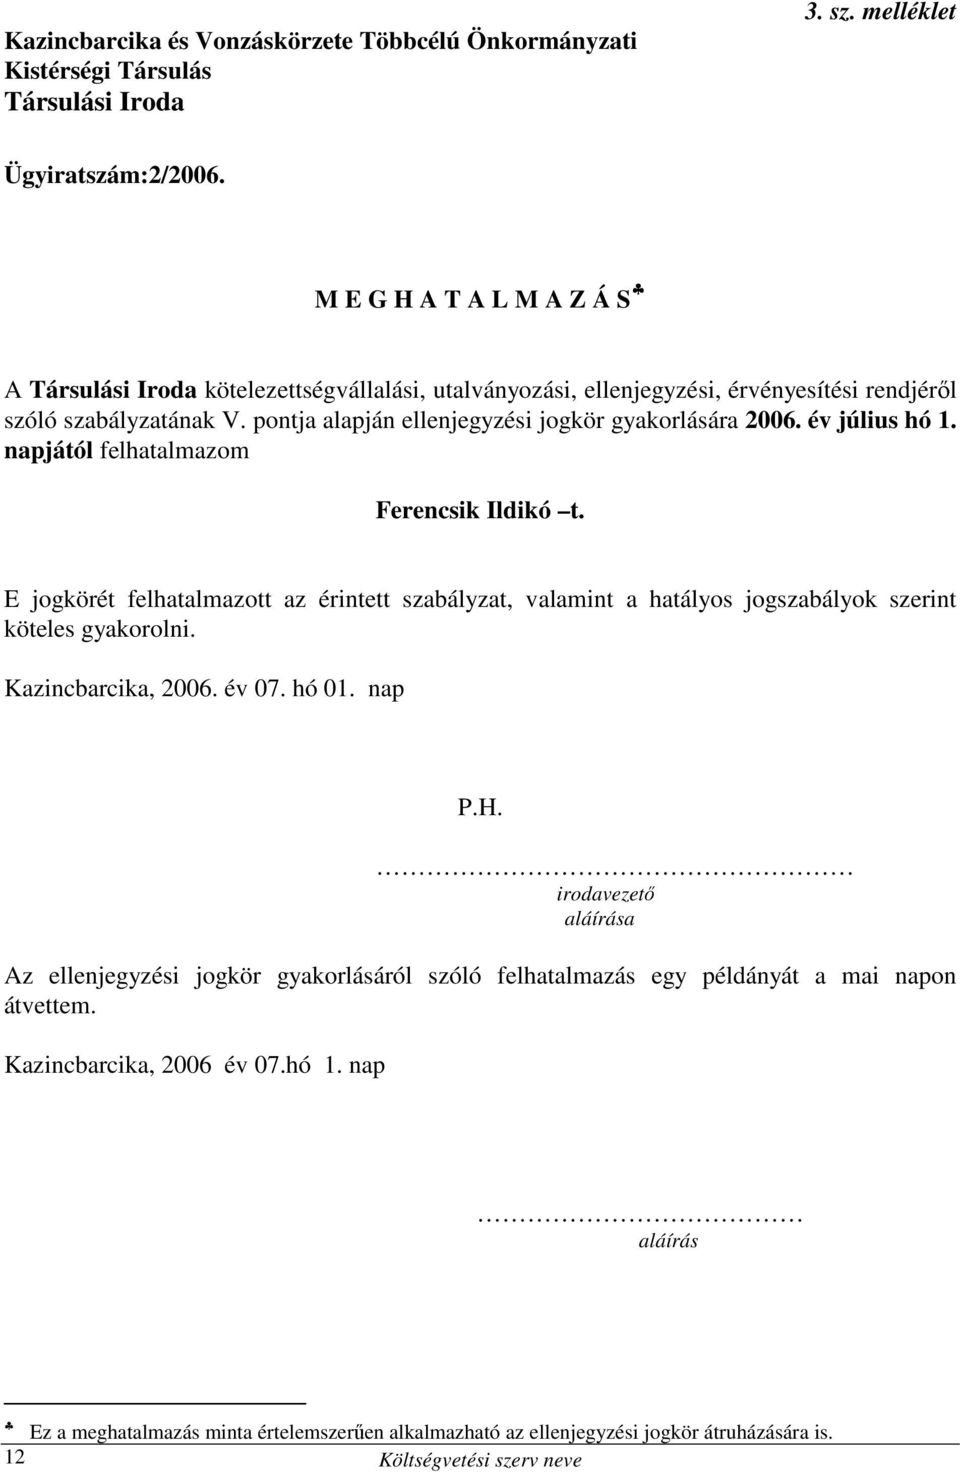 év július hó 1. napjától felhatalmazom Ferencsik Ildikó t. E jogkörét felhatalmazott az érintett szabályzat, valamint a hatályos jogszabályok szerint köteles gyakorolni. Kazincbarcika, 2006. év 07.